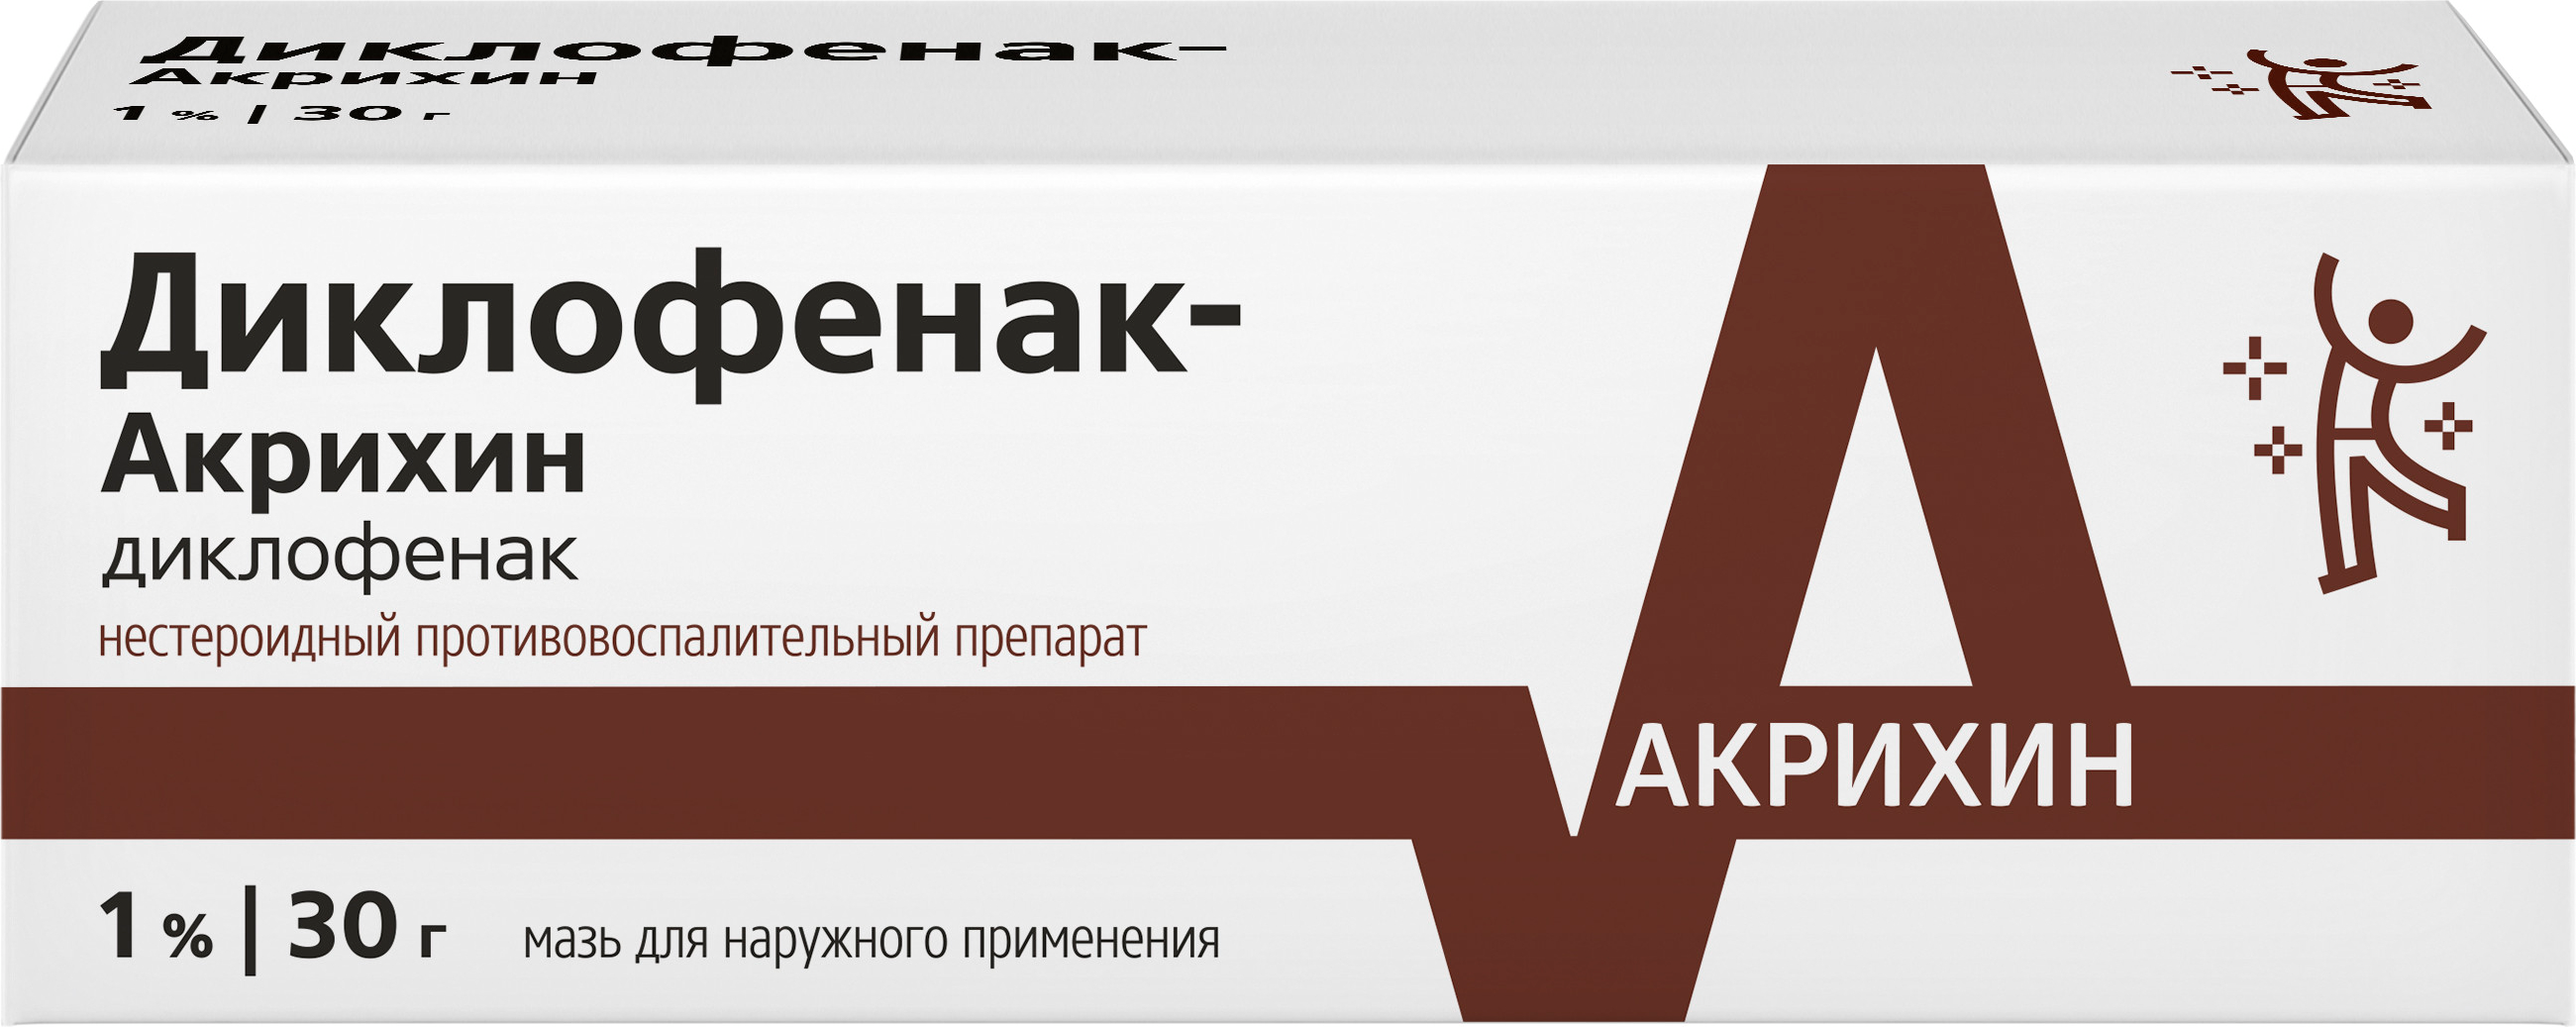 Диклофенак-Акрихин, мазь 1%, 30 г диклофенак ретард акрихин таб 100мг 20